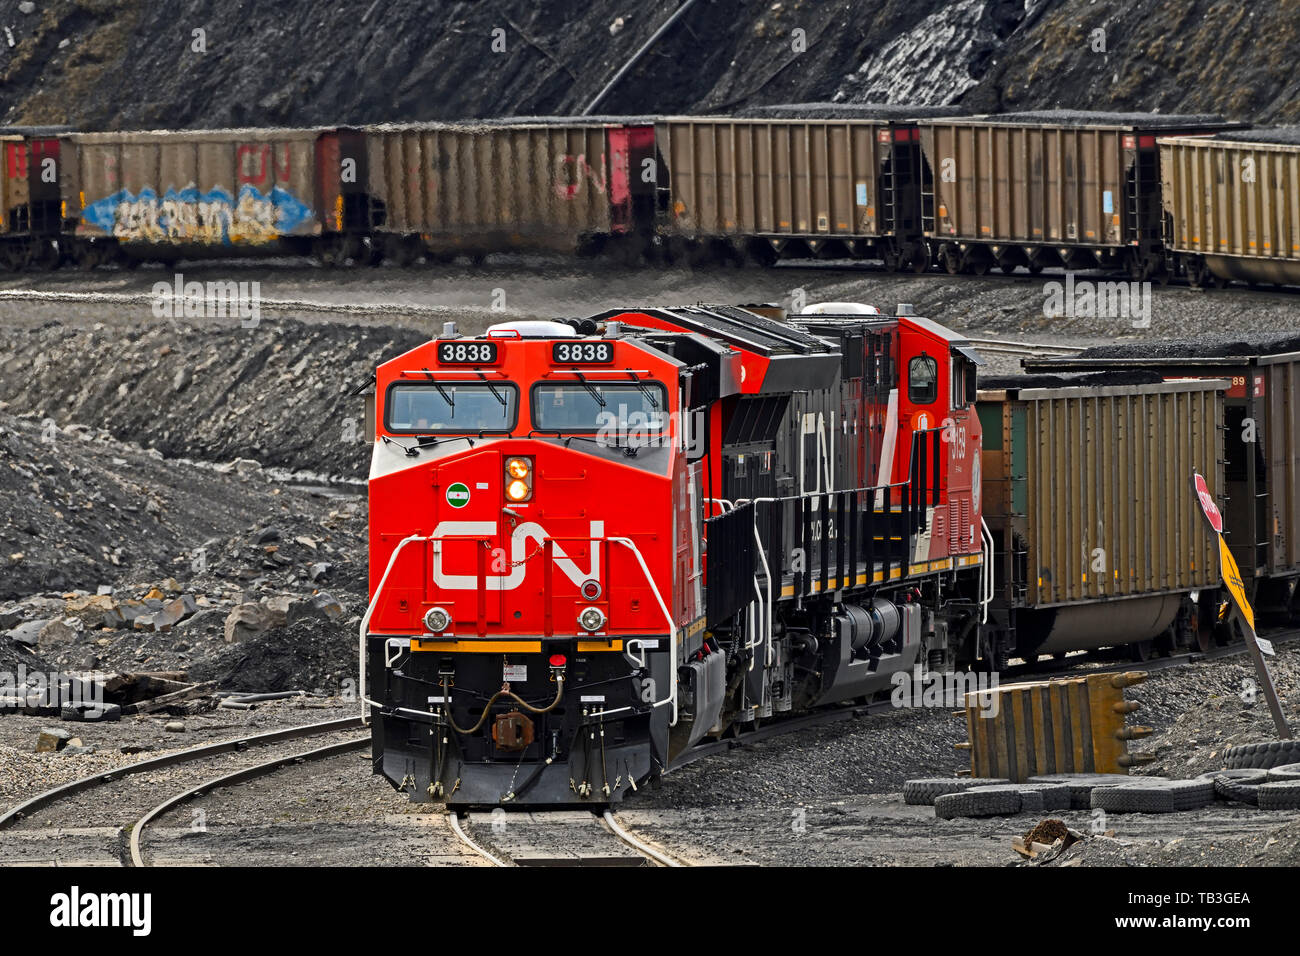 Ein Canadian National Railway Güterzug Steinkohle zu Kohle in den Ausläufern der Rocky Mountains von Alberta Kanada laden Stockfoto